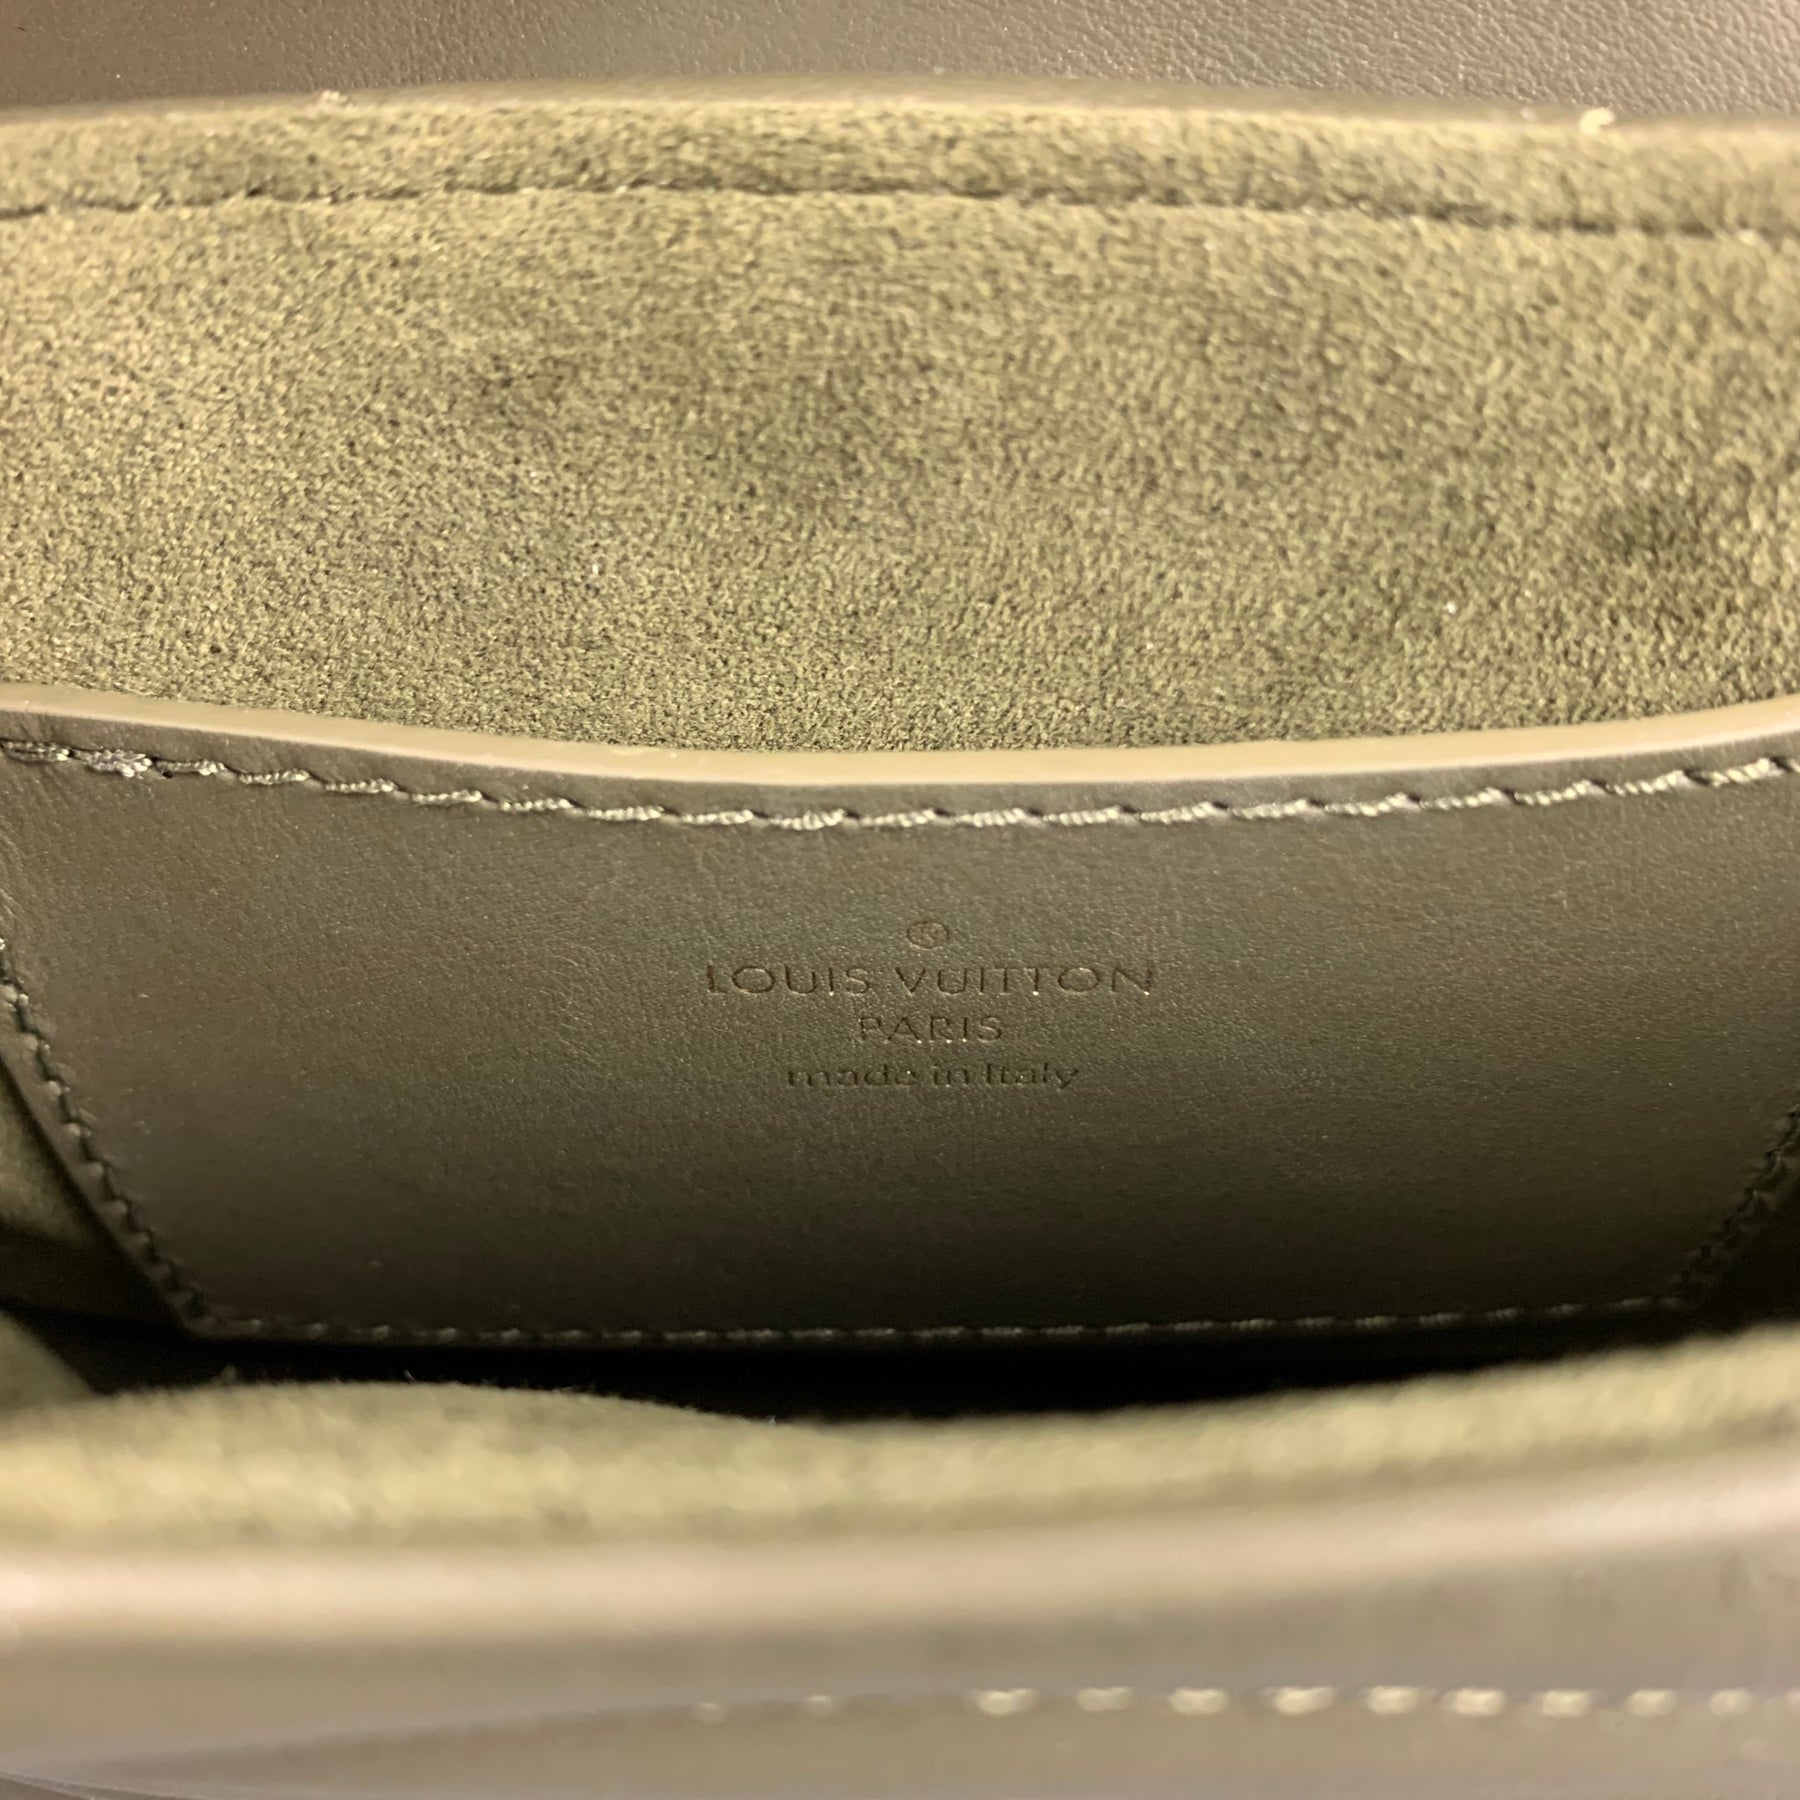 New Wave Multi-Pochette 🤍 #louisvuitton #louisvuittonlover #minibag